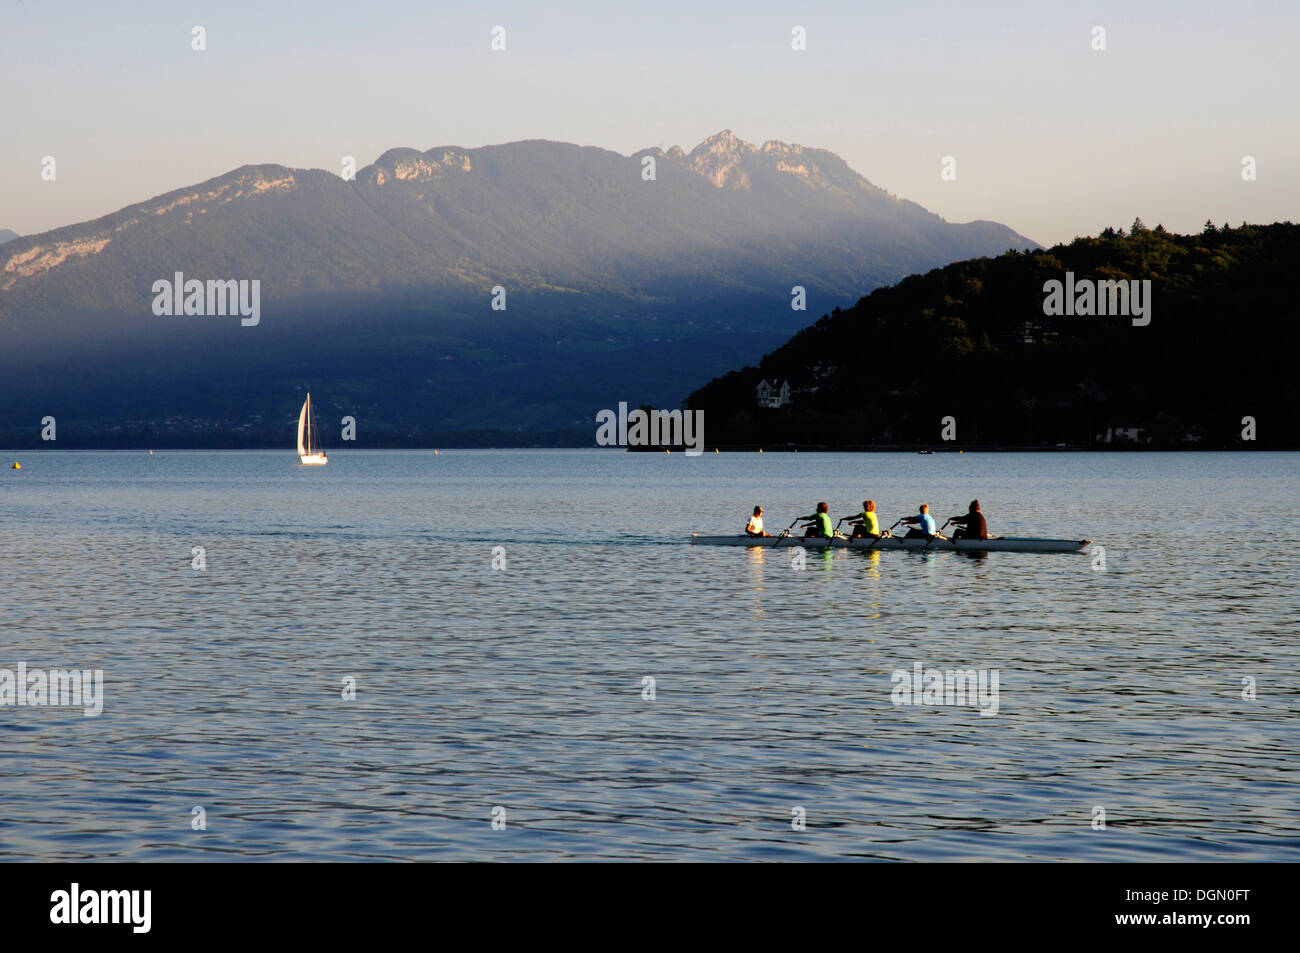 Une équipe d'aviron de compétition la pratique sur le lac d'Annecy, France Banque D'Images